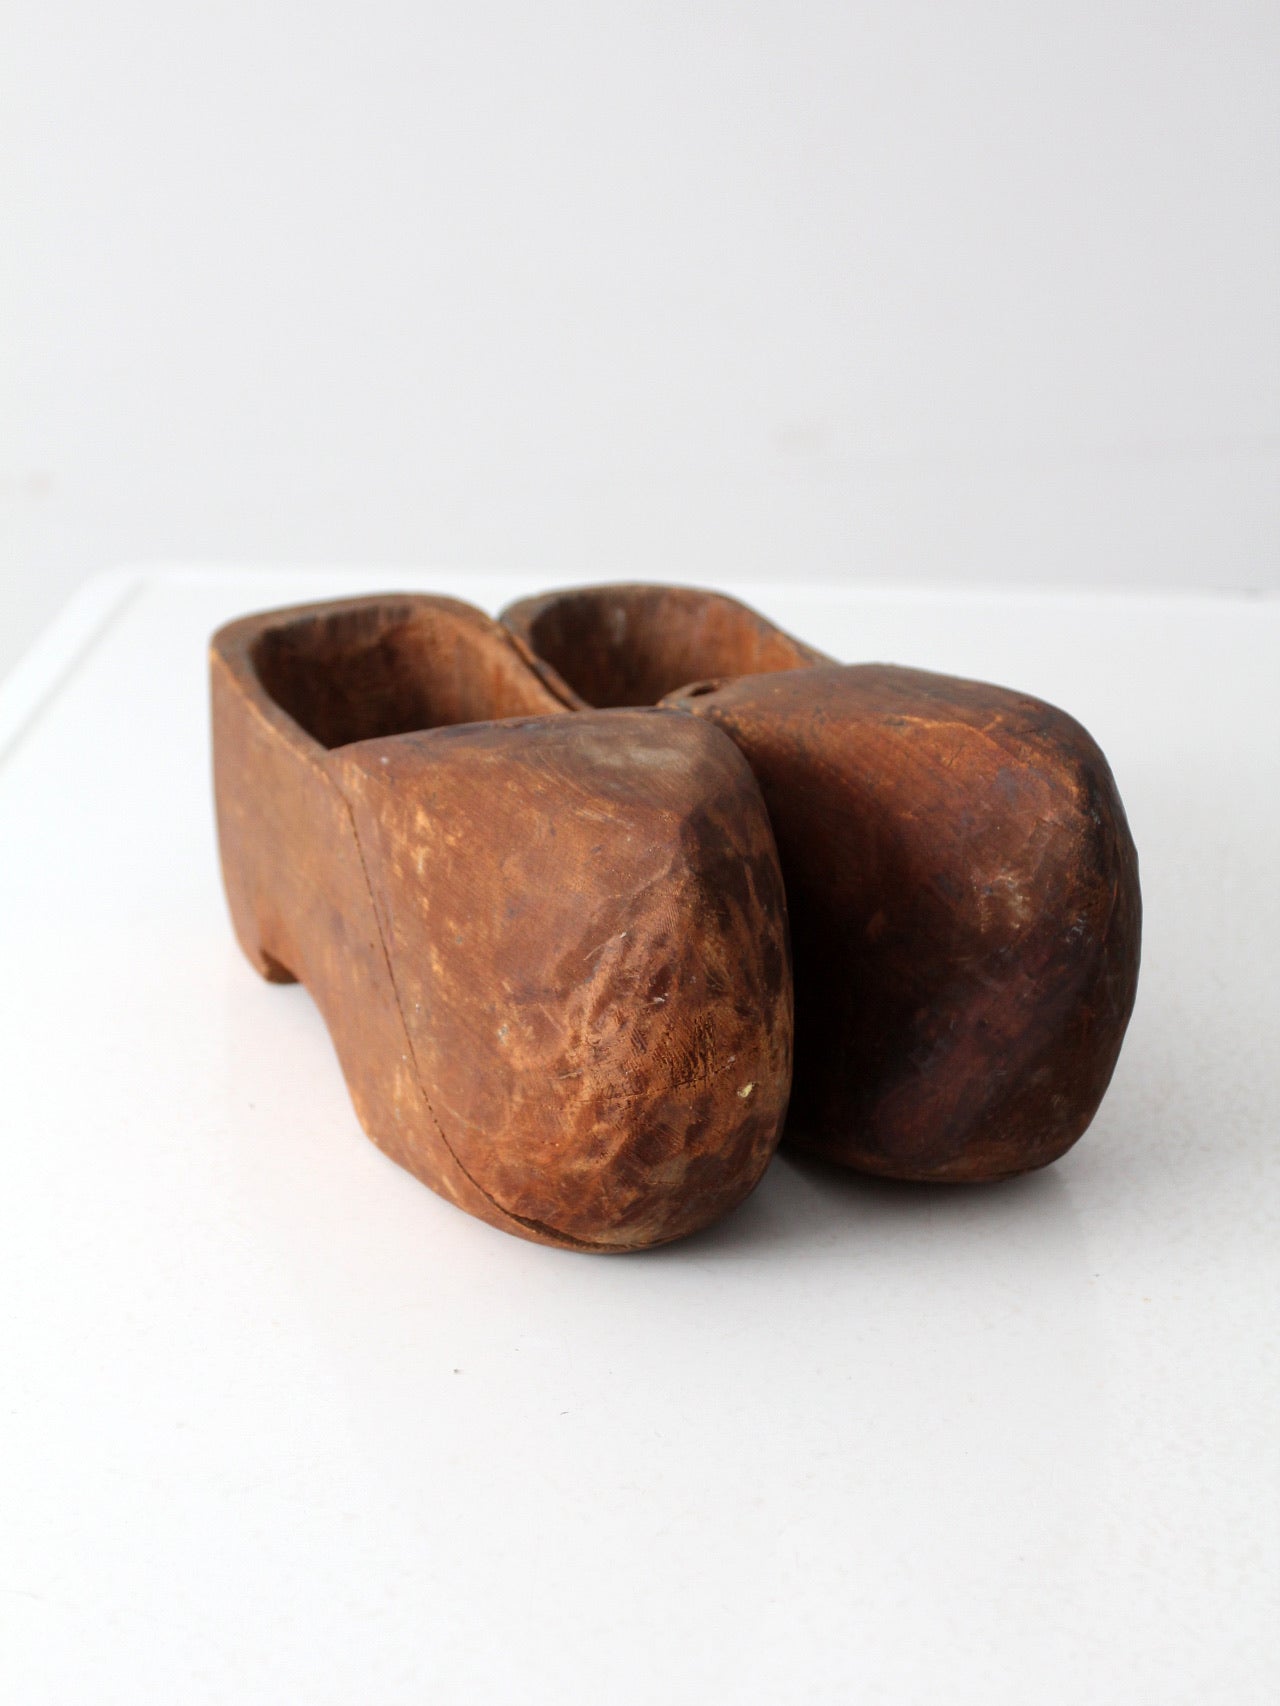 antique primitive wooden clogs